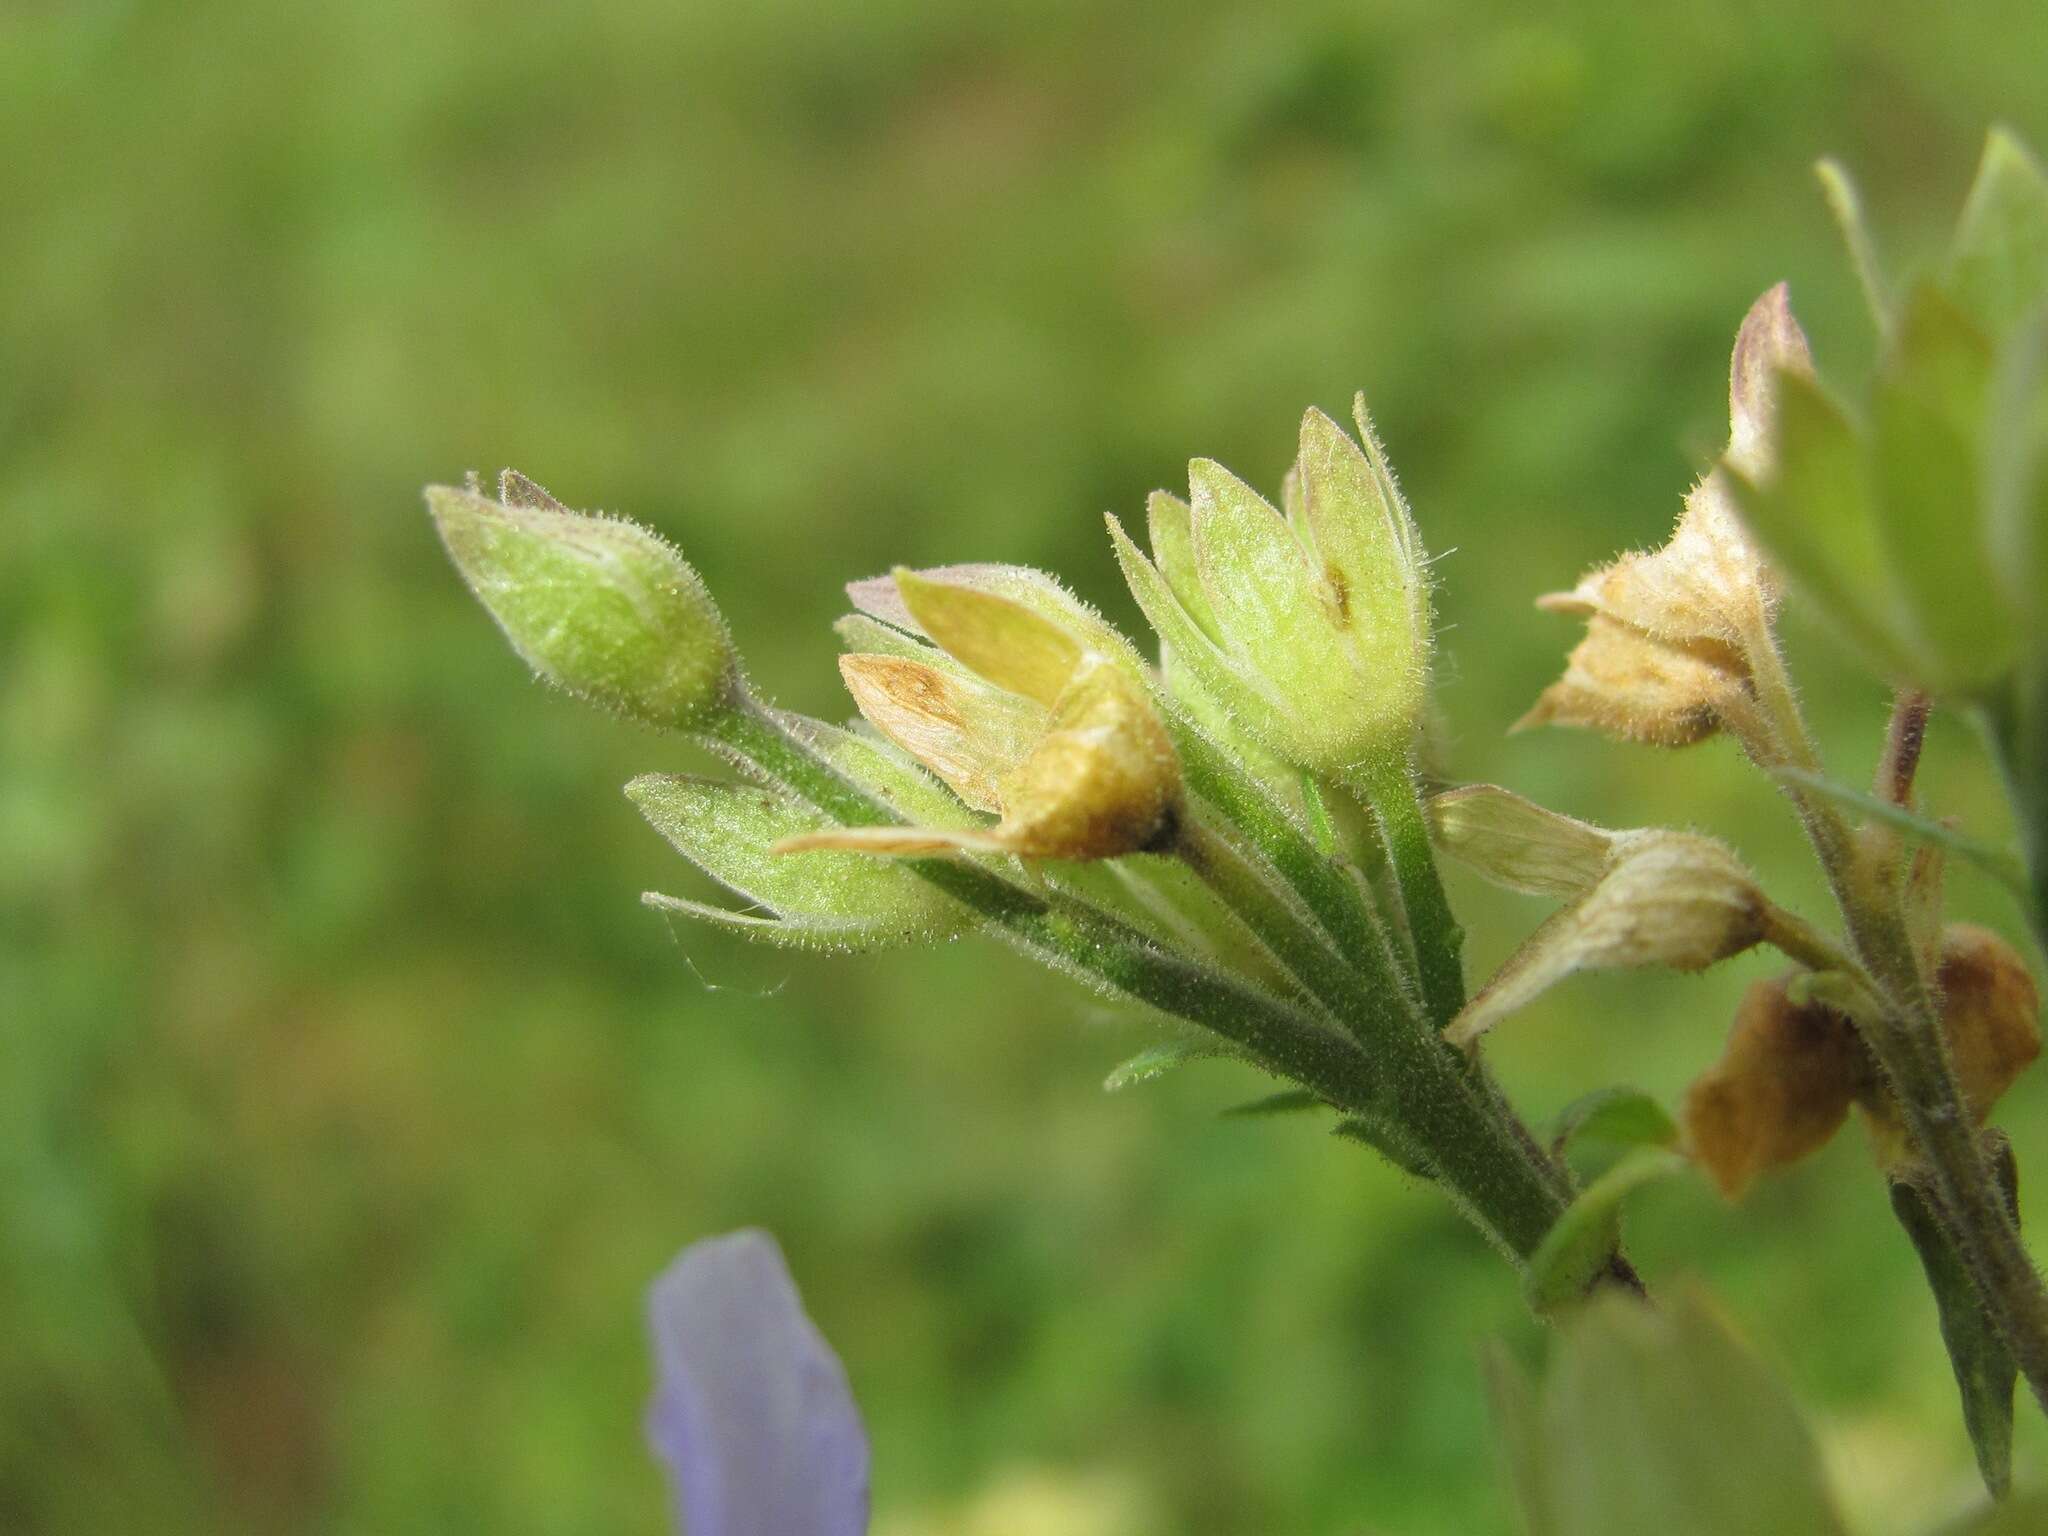 Image of Polemonium caeruleum subsp. caeruleum